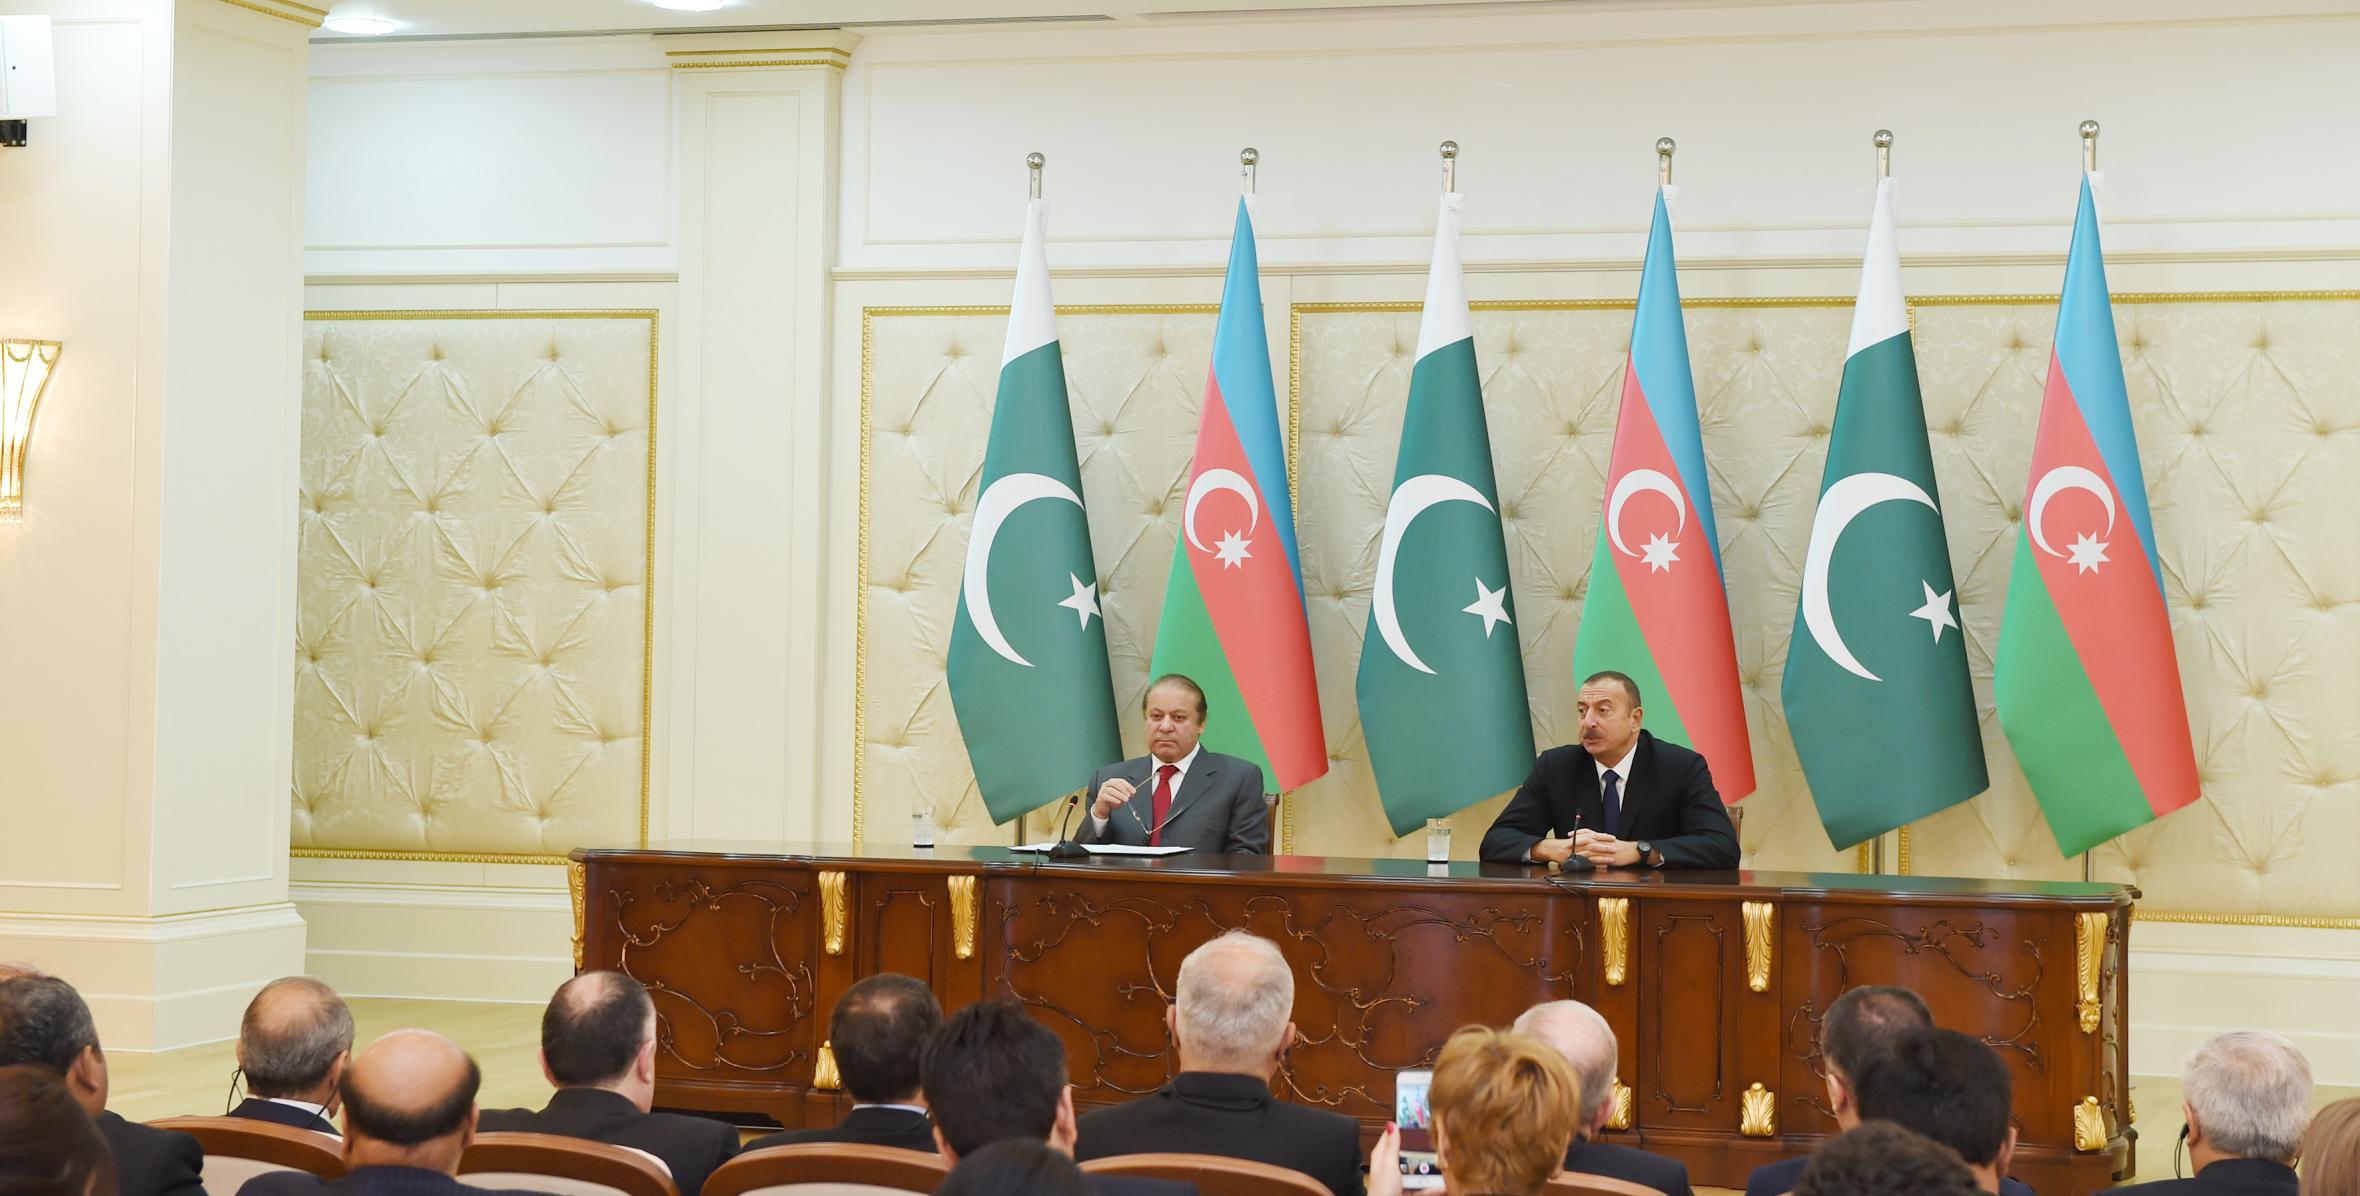 Ильхам Алиев и премьер-министр Мухаммад Наваз Шариф выступили с заявлениями для печати